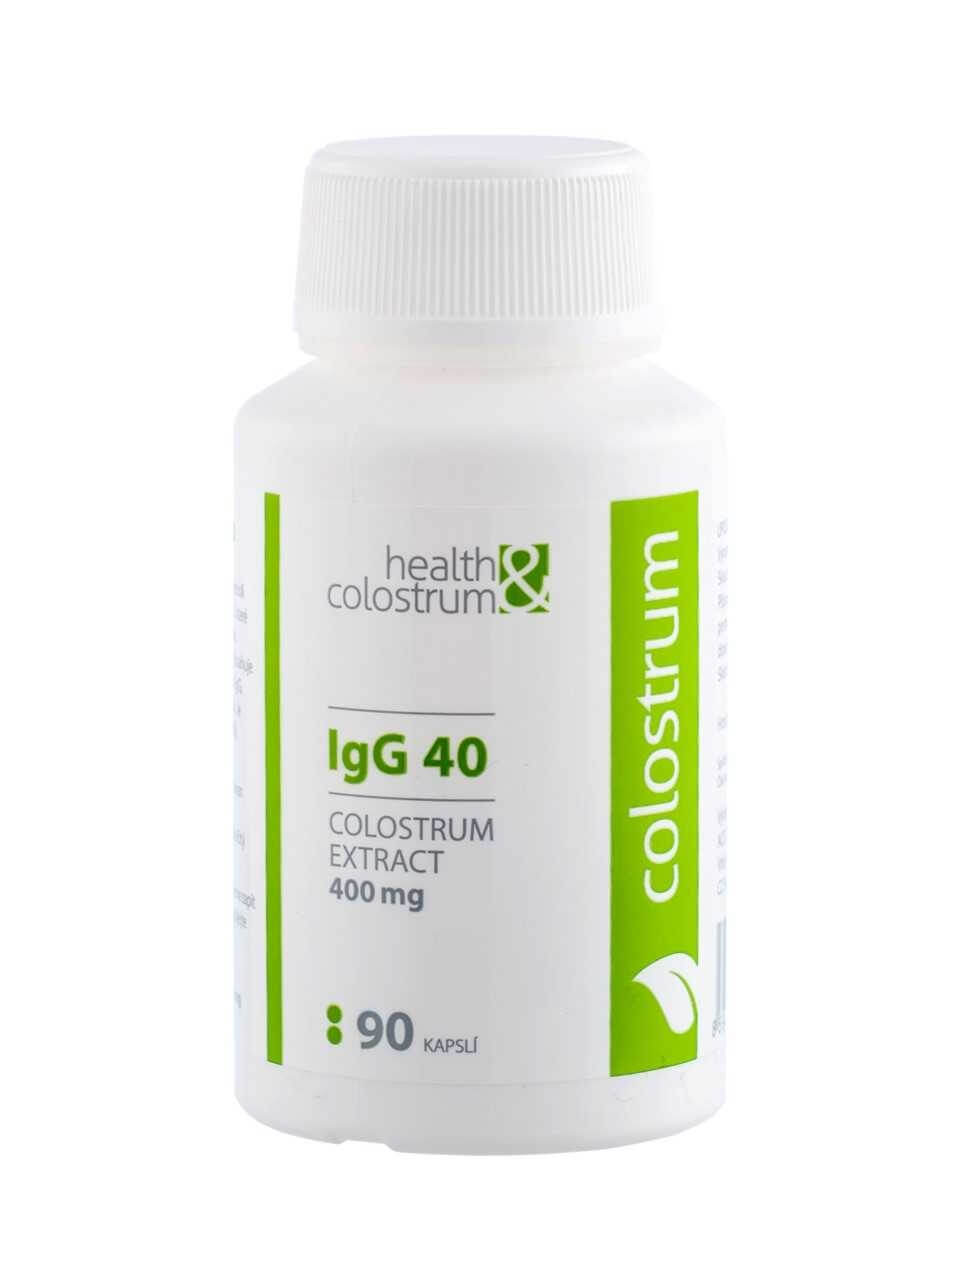 Zobrazit detail výrobku Health&colostrum Colostrum IgG 40 (400 mg) 90 kapslí + 2 měsíce na vrácení zboží